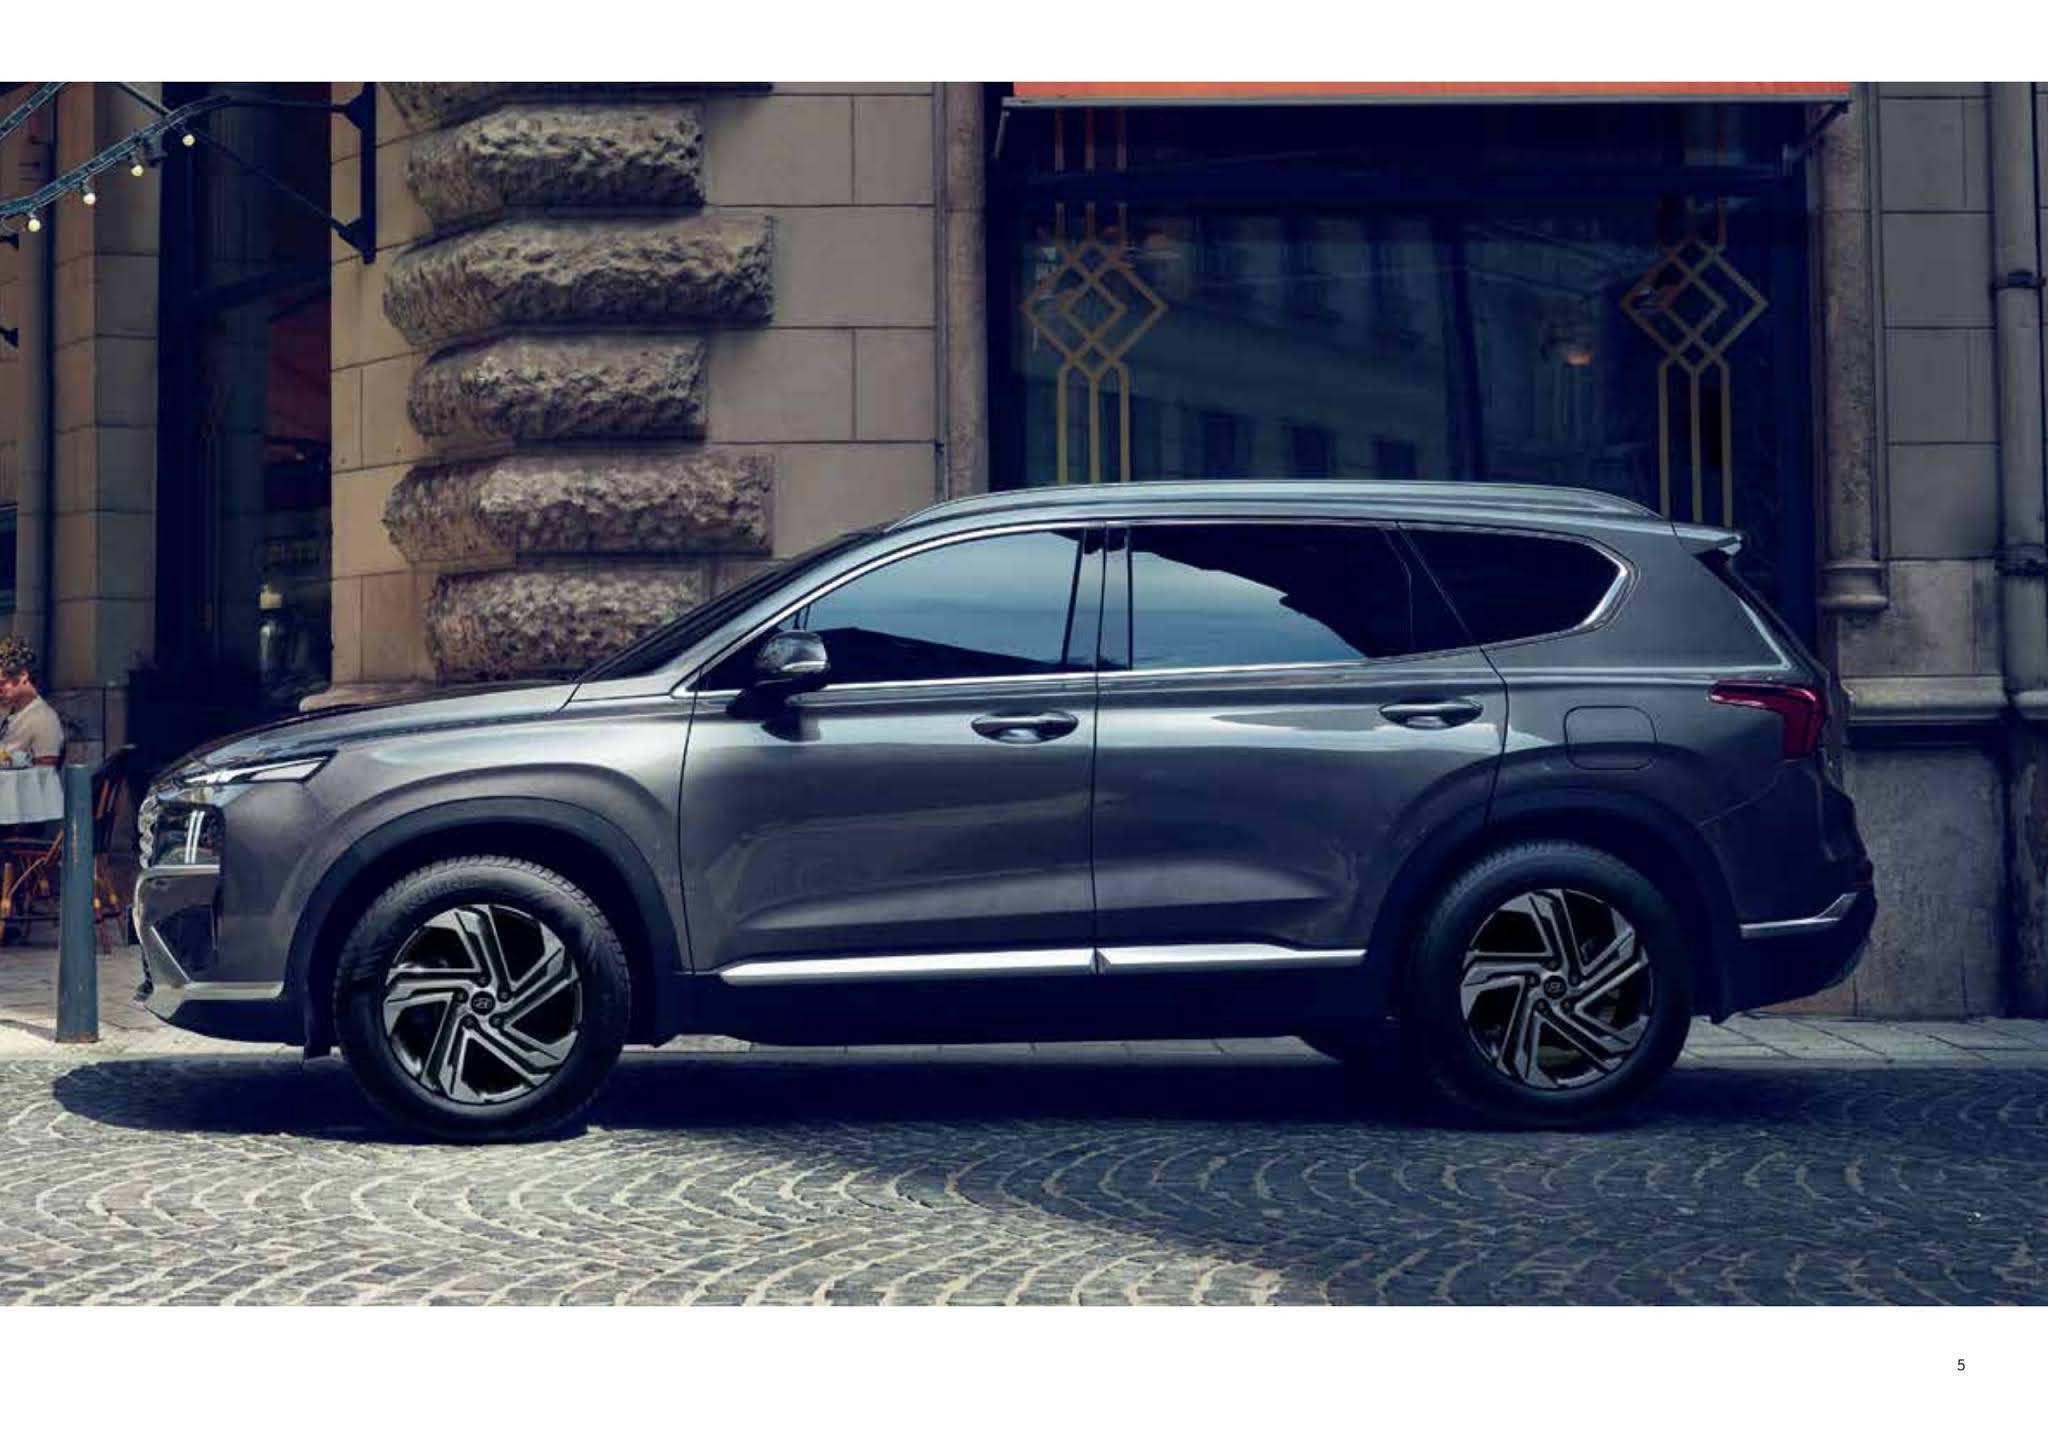 Hyundai Santa Fe Indonesia Promo Harga Kredit Tukar Tambah Mobil Baru